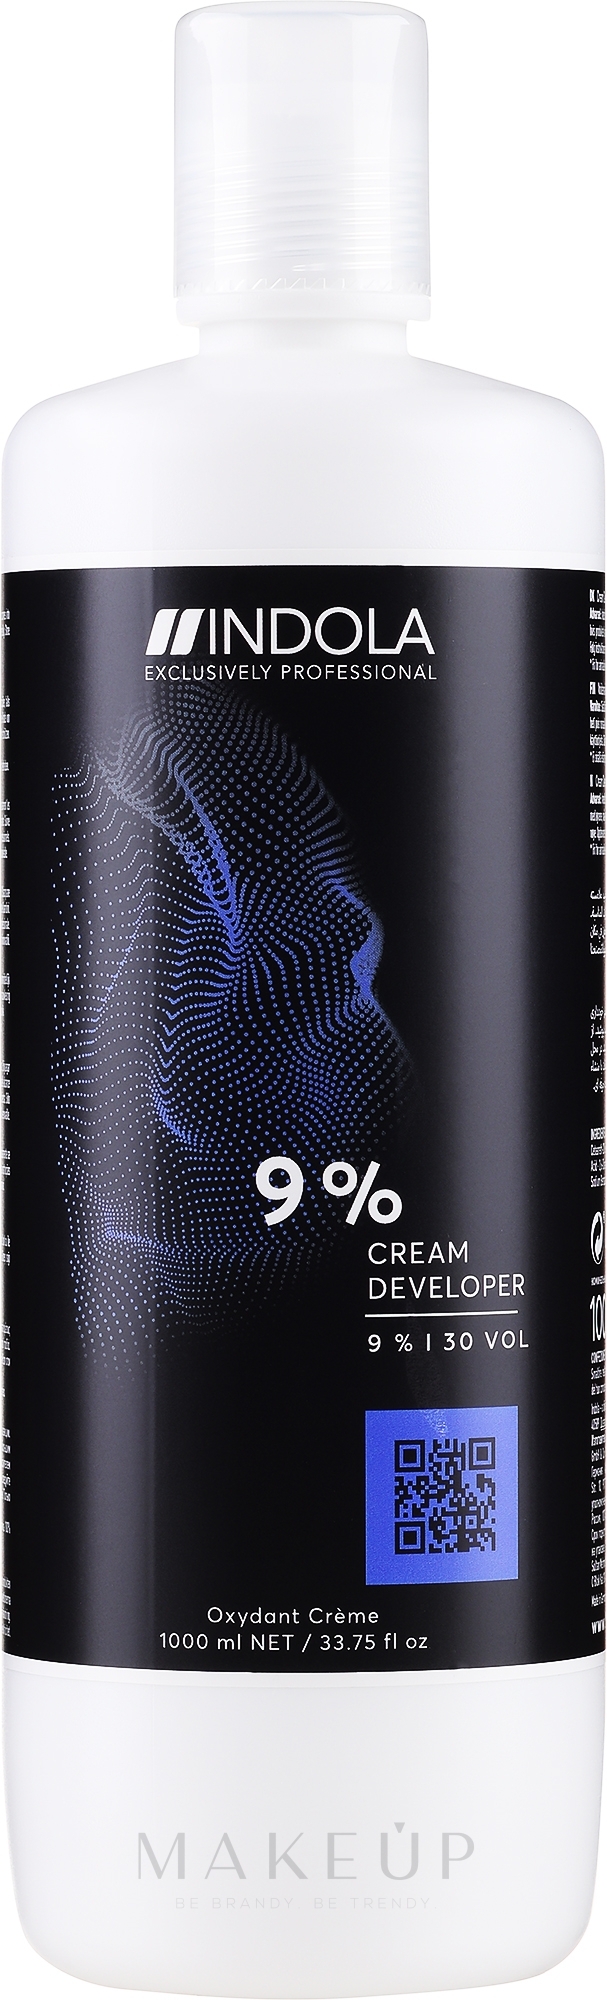 Entwicklerlotion 9% - Indola Profession Cream Developer 9% 30 vol — Bild 1000 ml